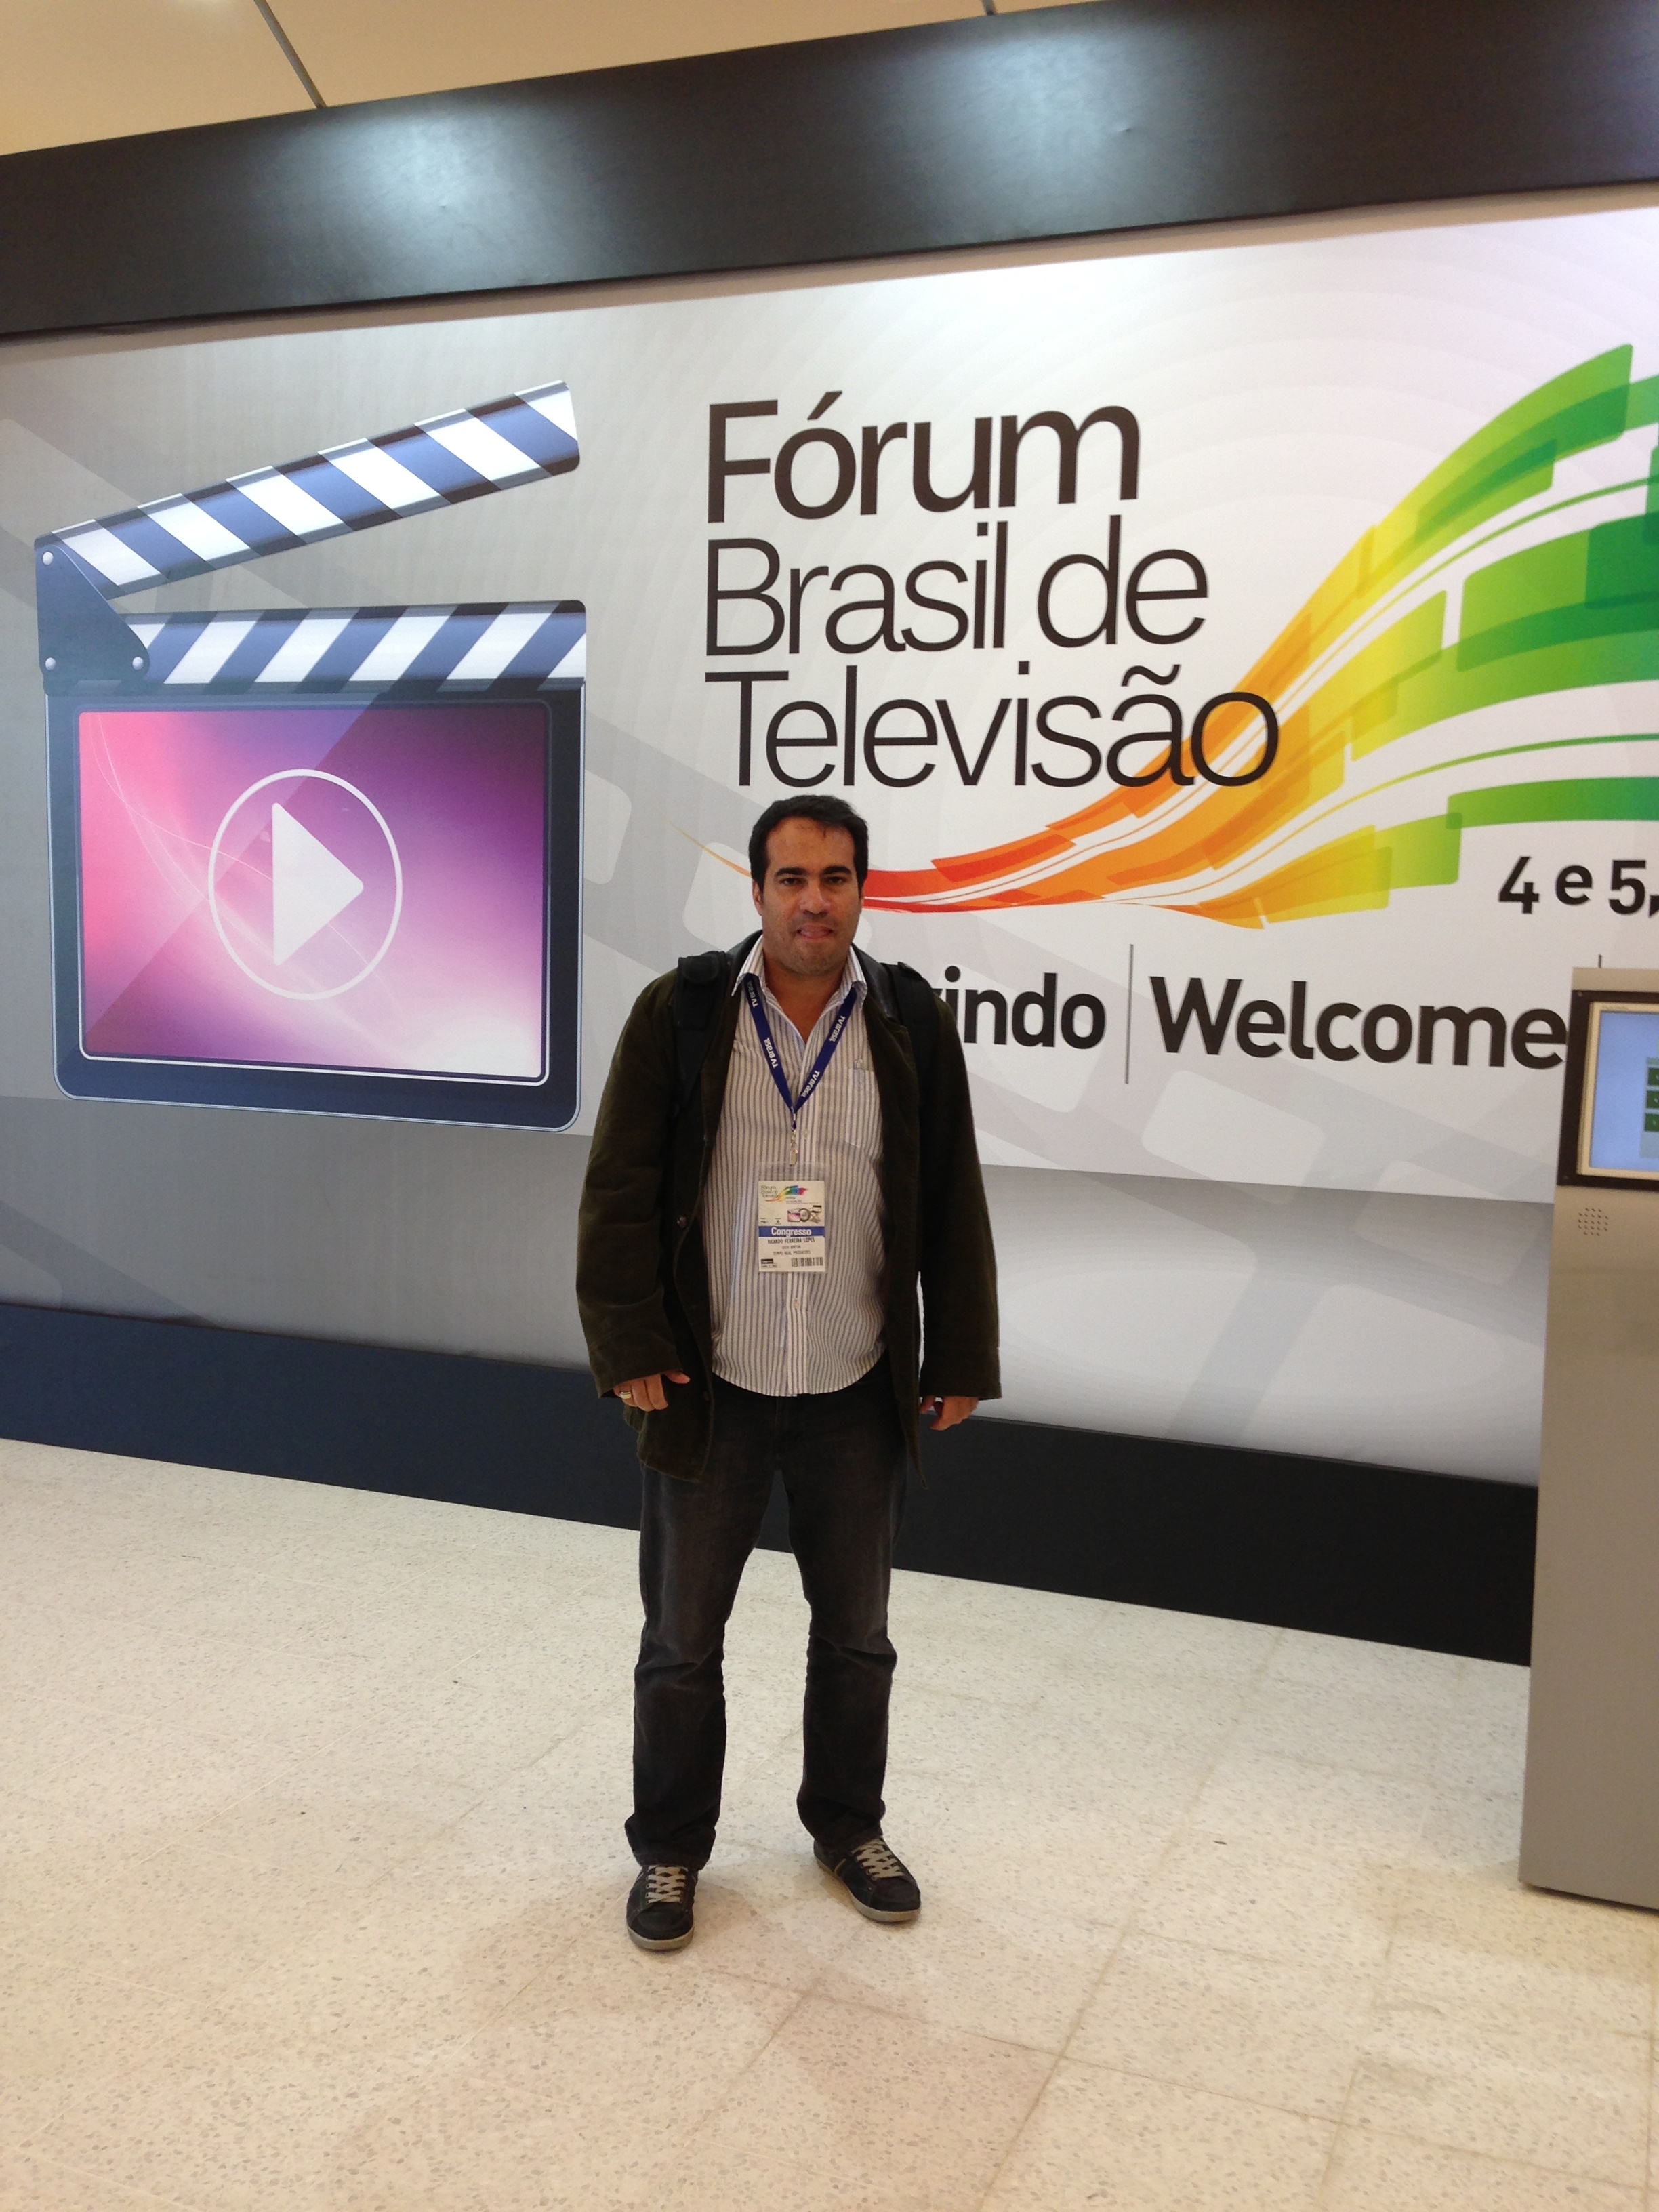 RICARDO FORUM BRASIL TV